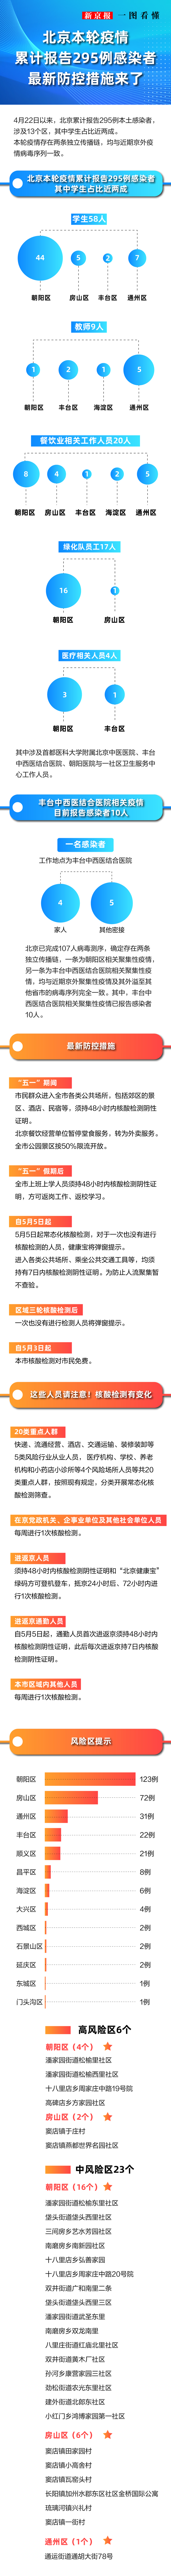 一图看懂丨北京本轮疫情累计报告295例感染者最新防控措施来了人音版九年级上册音乐电子书